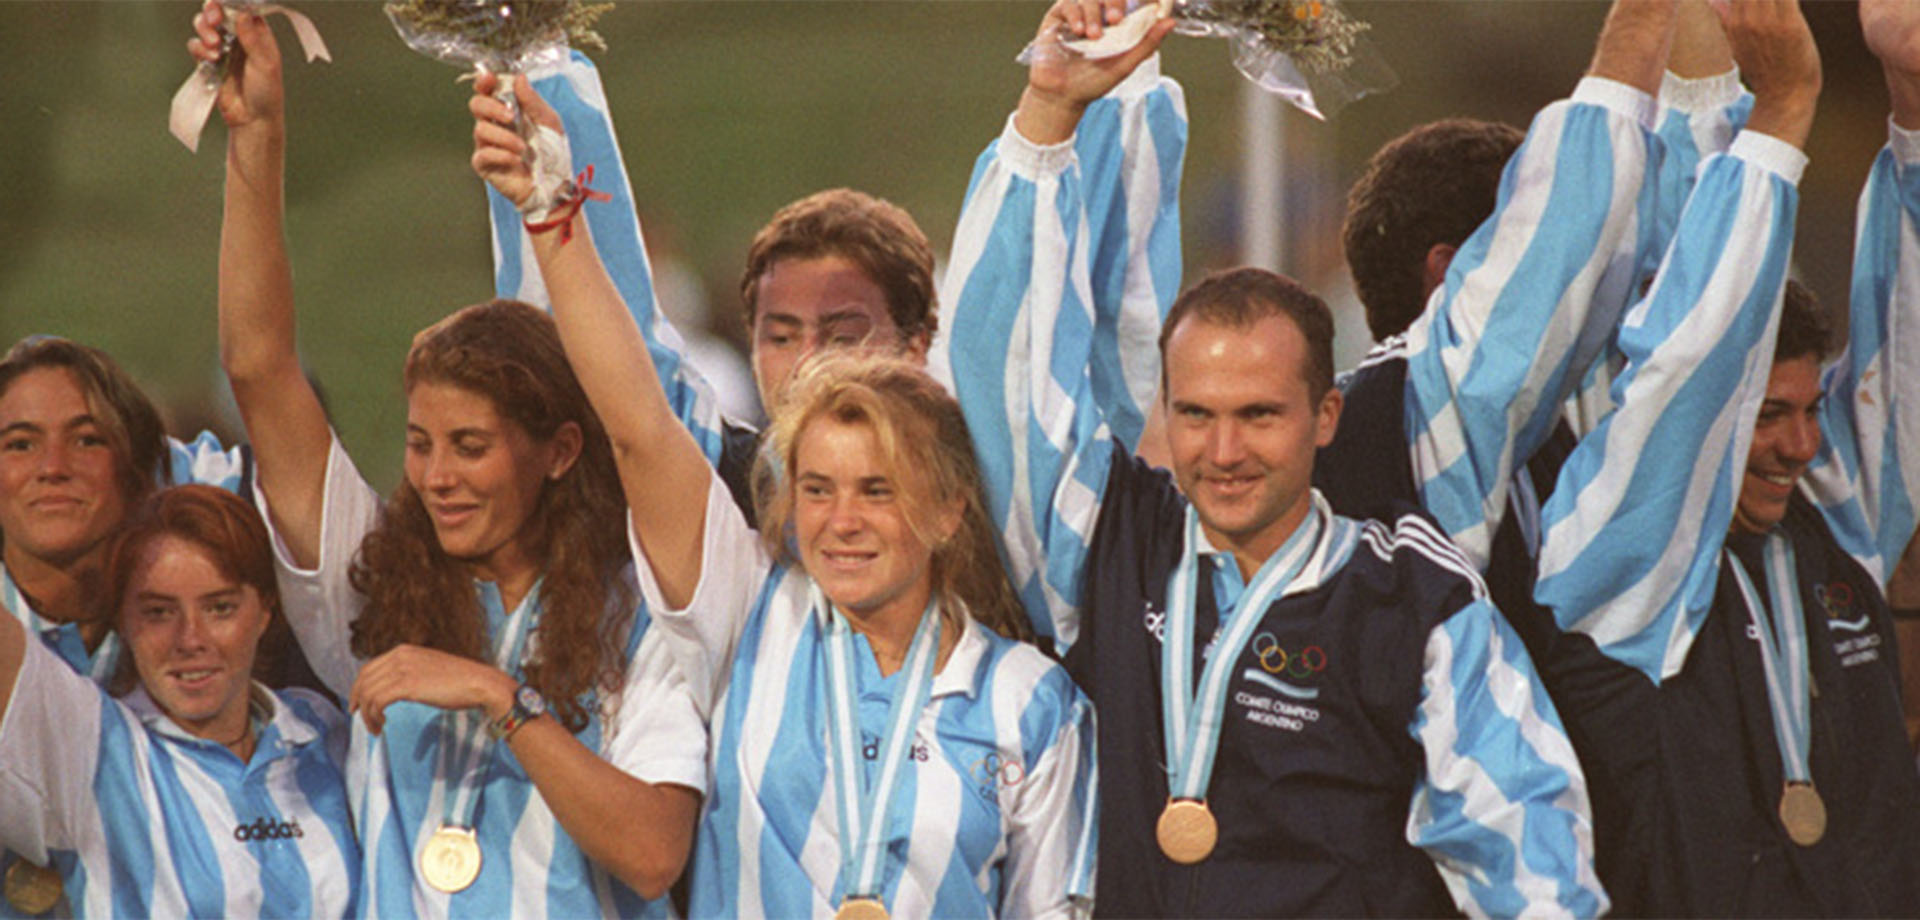 El seleccionado de Hockey en los Panamericanos de 1995, en los que Marisa López alzó una medalla de oro (Crédito: Confederación Argentina de Hockey)